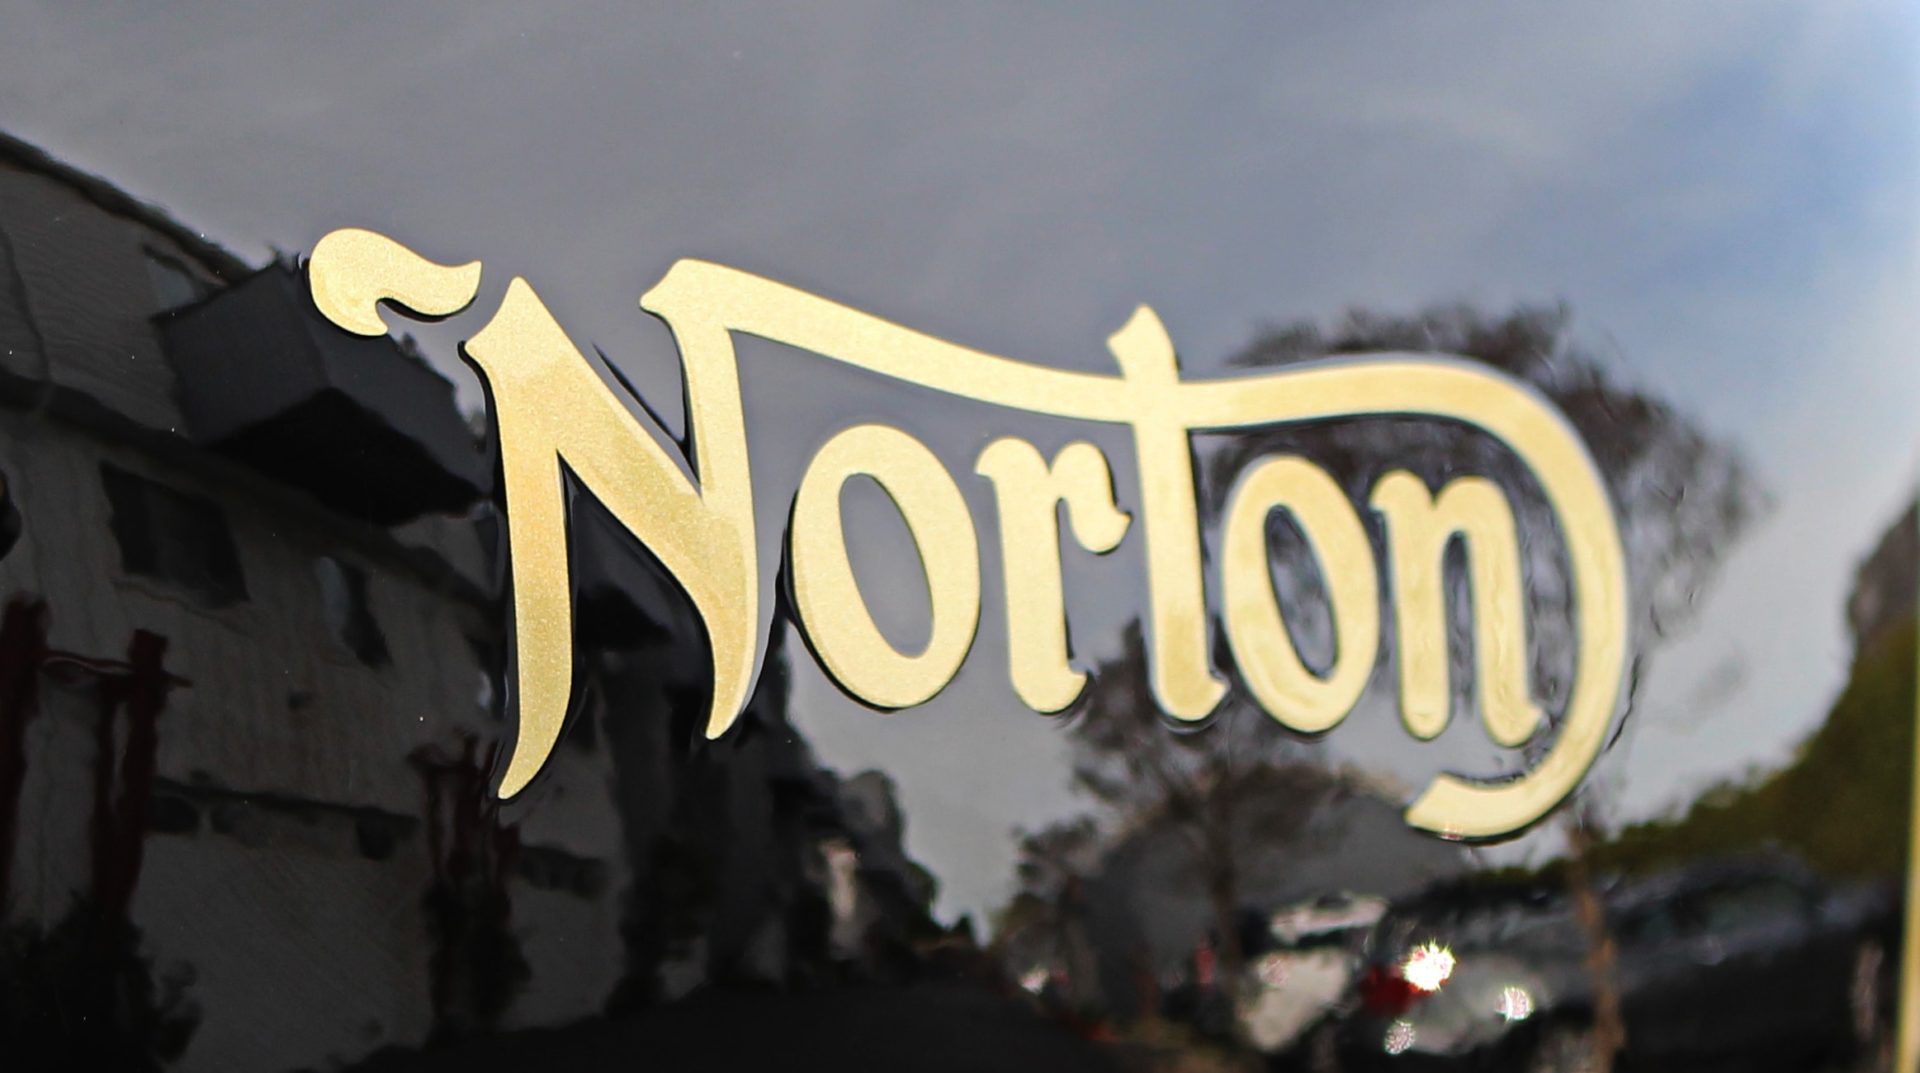 Norton symbol